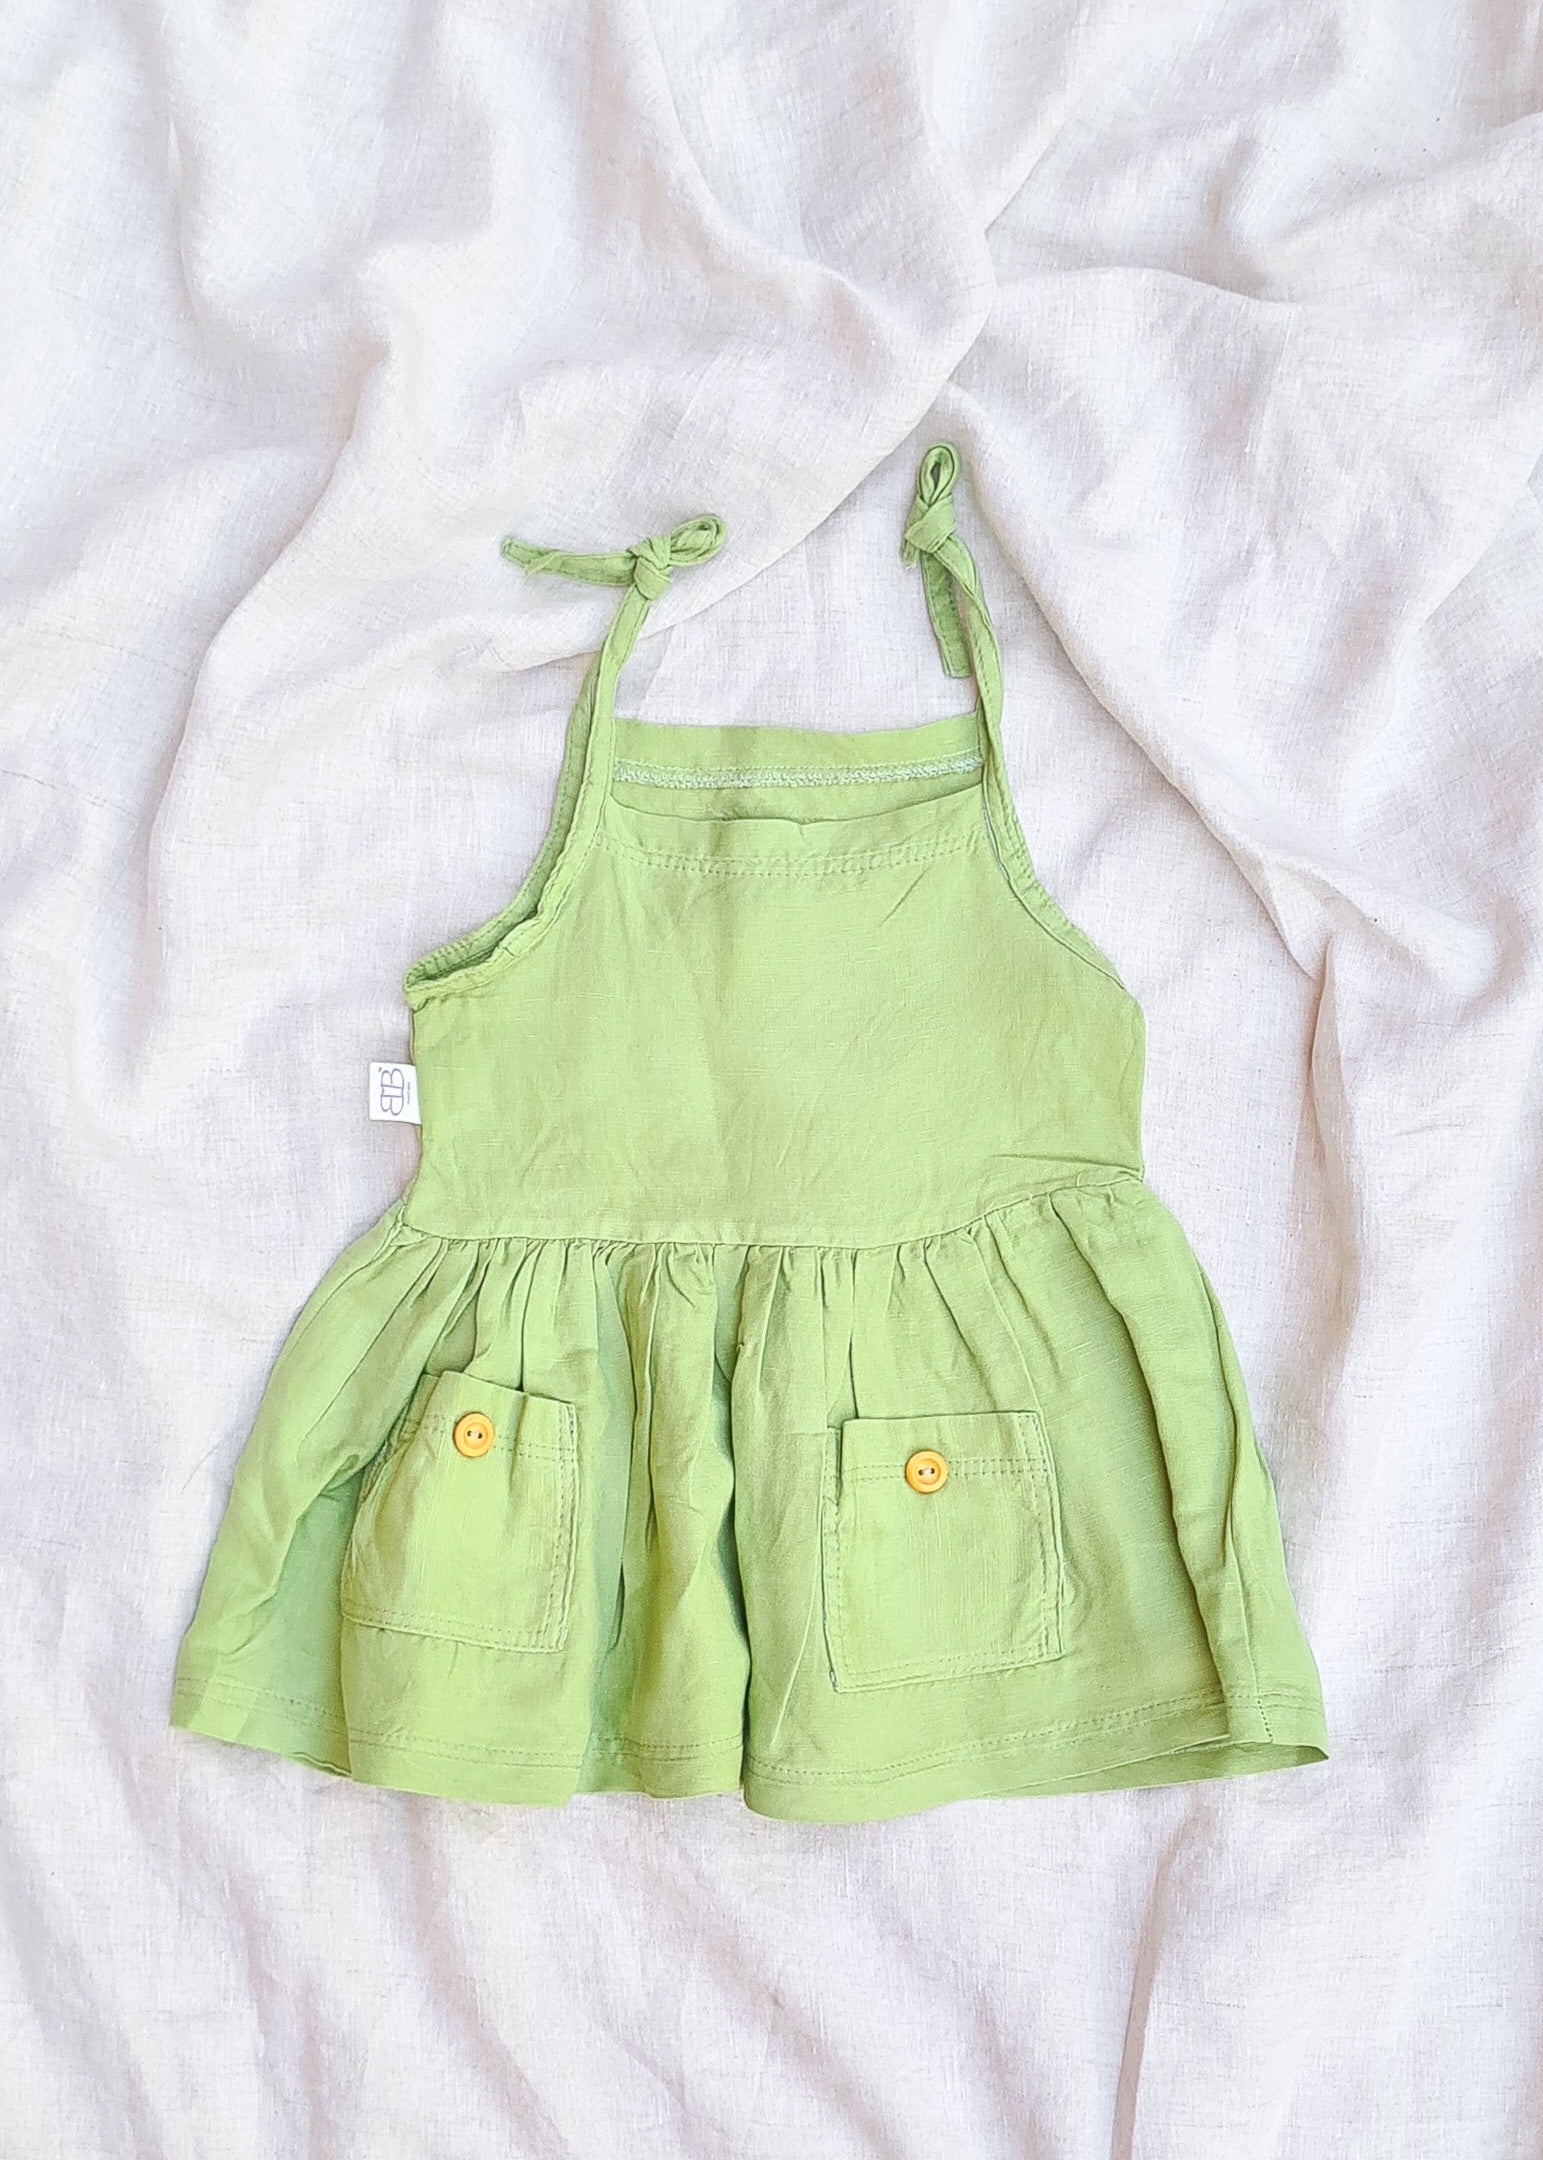 Linen dress for little girls baby toddler green